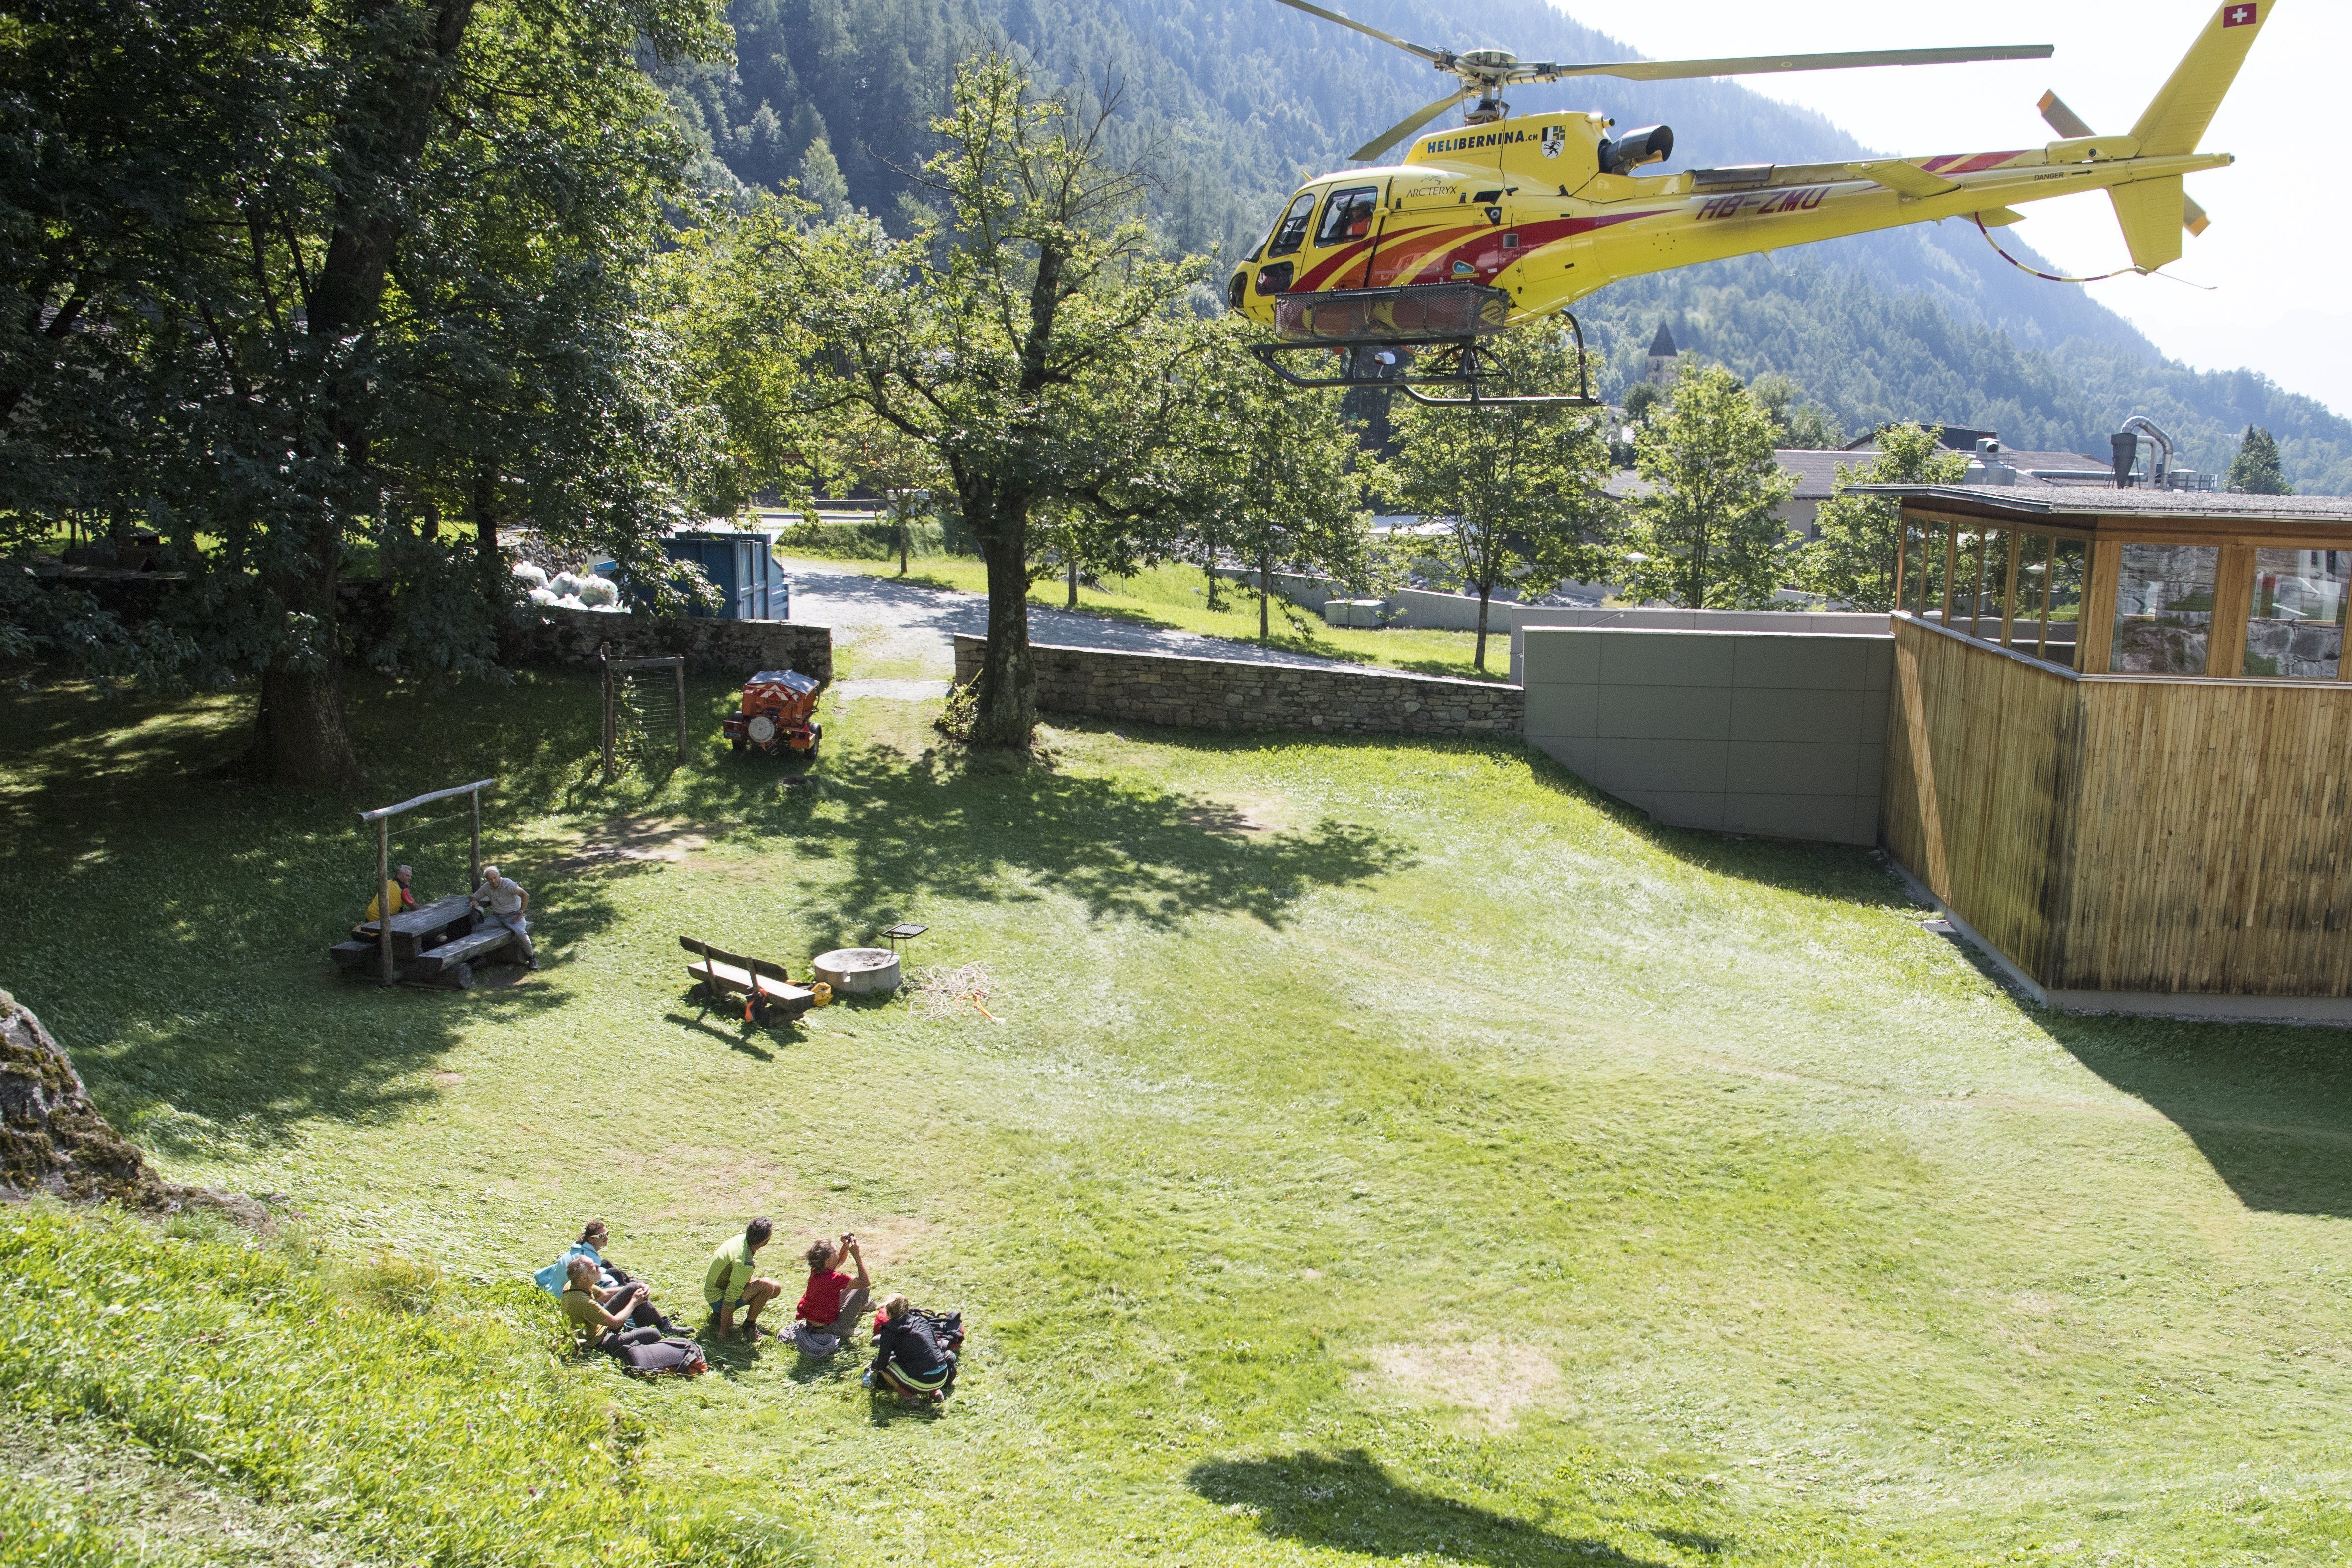 Continúan desaparecidas ocho personas tras avalancha en Suiza